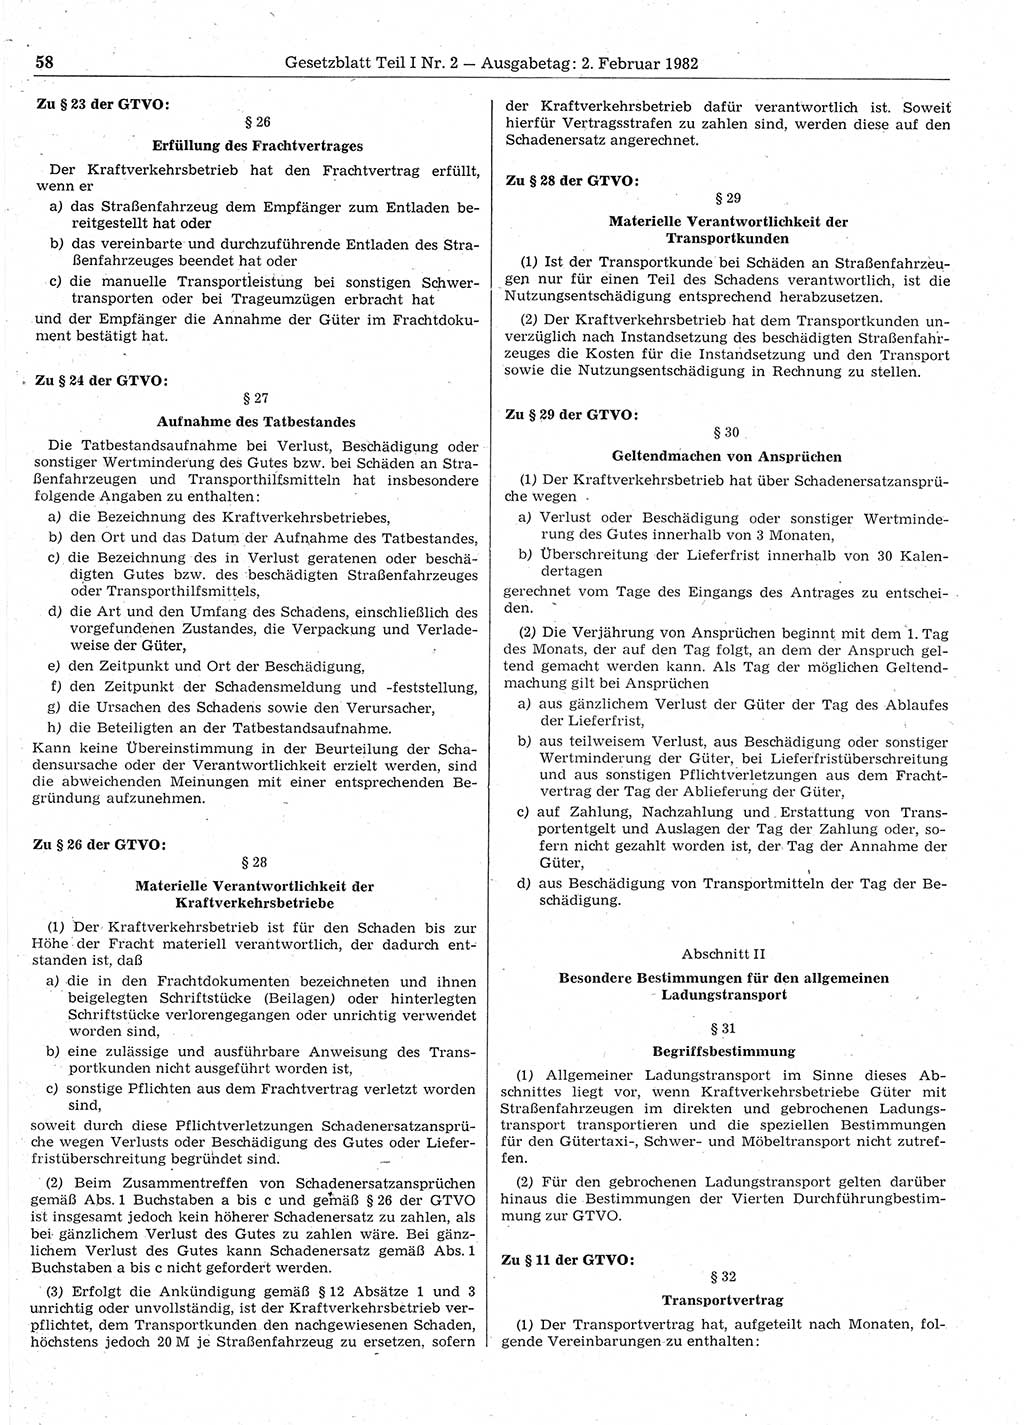 Gesetzblatt (GBl.) der Deutschen Demokratischen Republik (DDR) Teil Ⅰ 1982, Seite 58 (GBl. DDR Ⅰ 1982, S. 58)